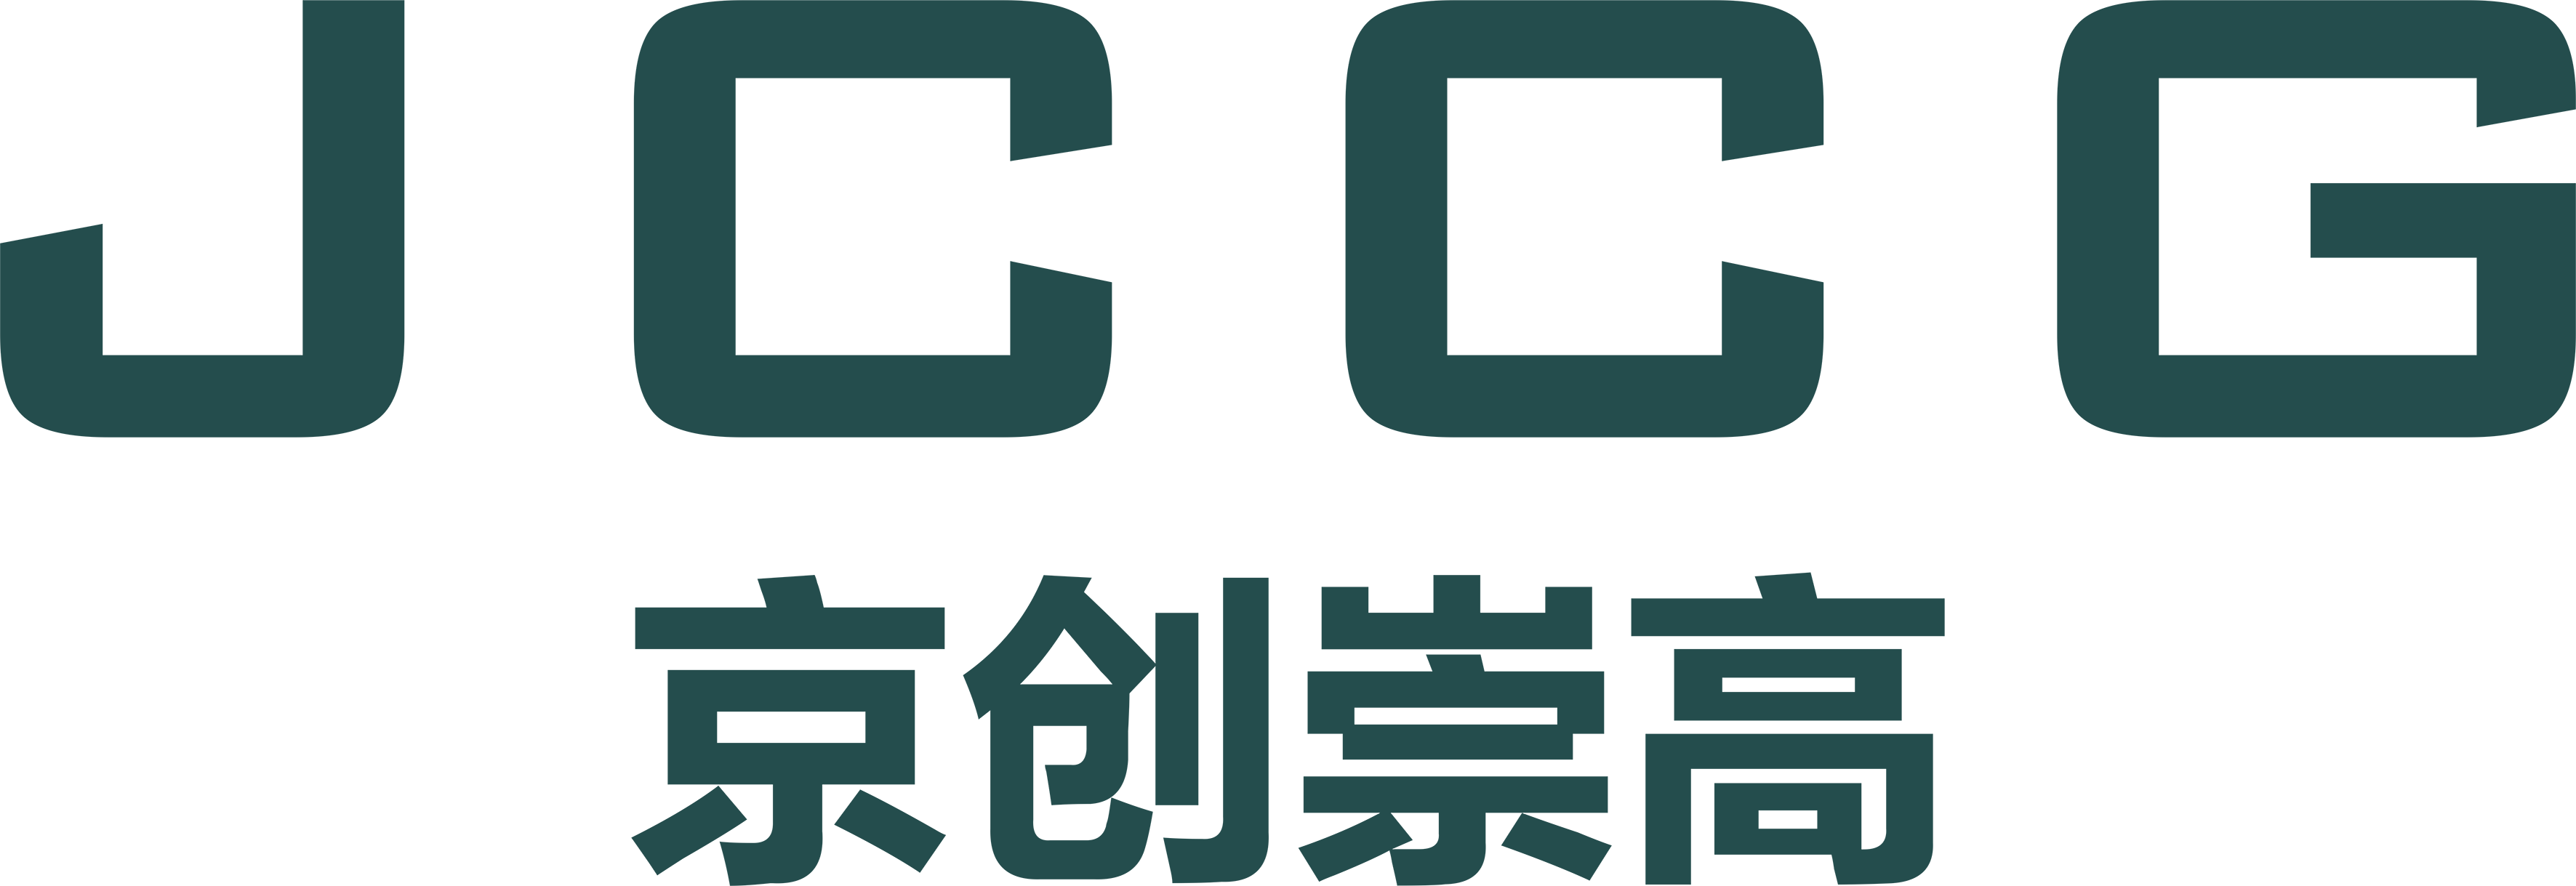 武汉免费pg电子游戏模拟器有限公司品牌Logo